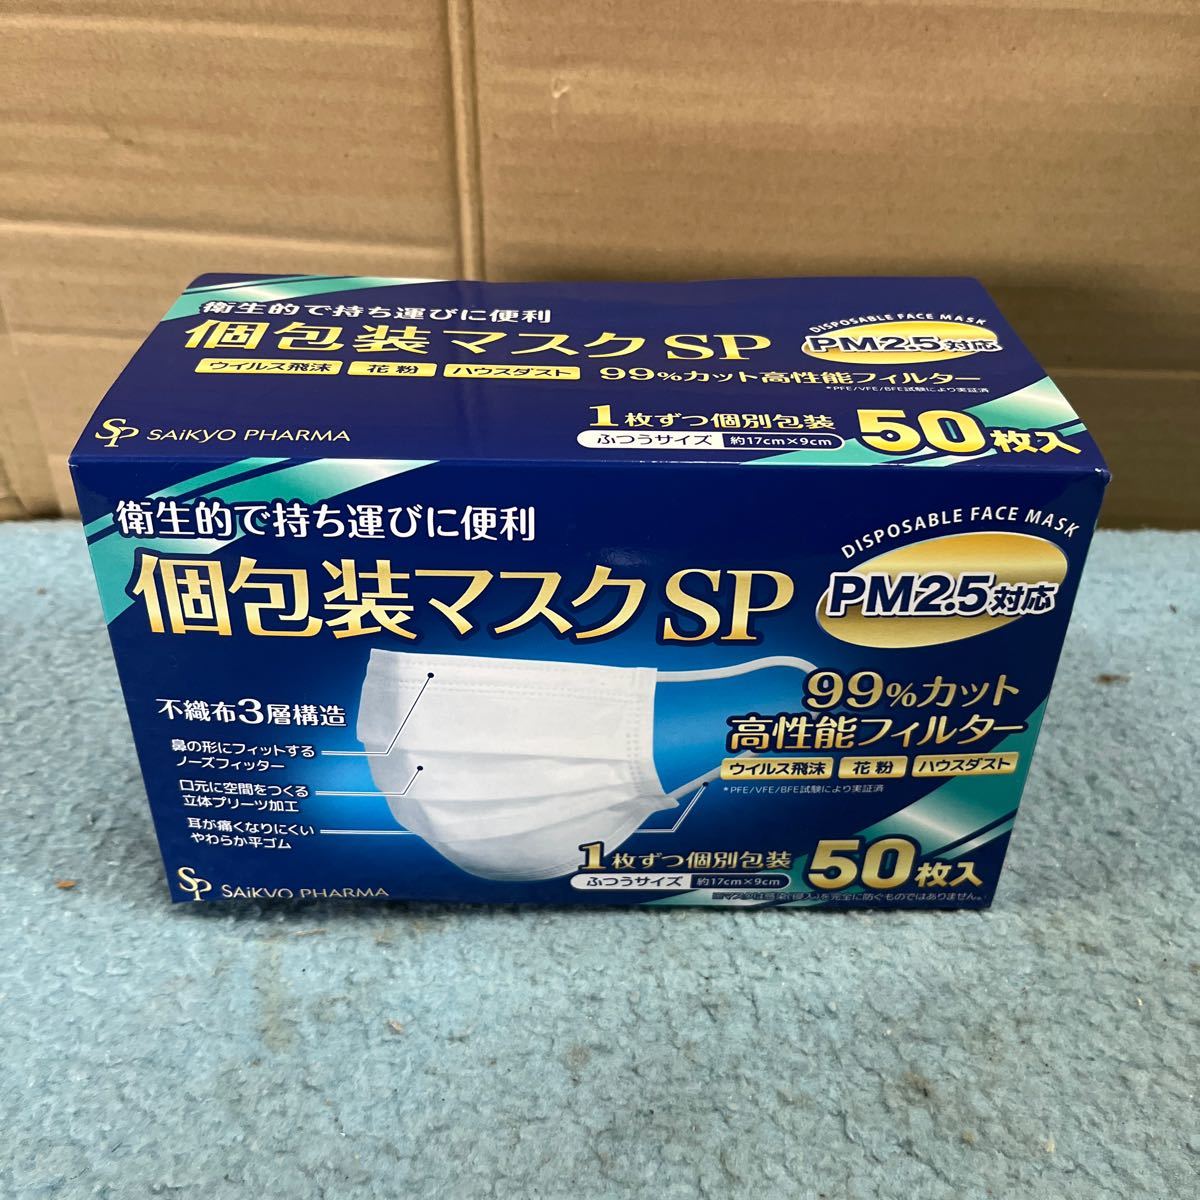 個包装マスクSP SAiKYO PHARMA マスク 50枚入り ふつうサイズ 約17cm×9cm 衛生用品 _画像1